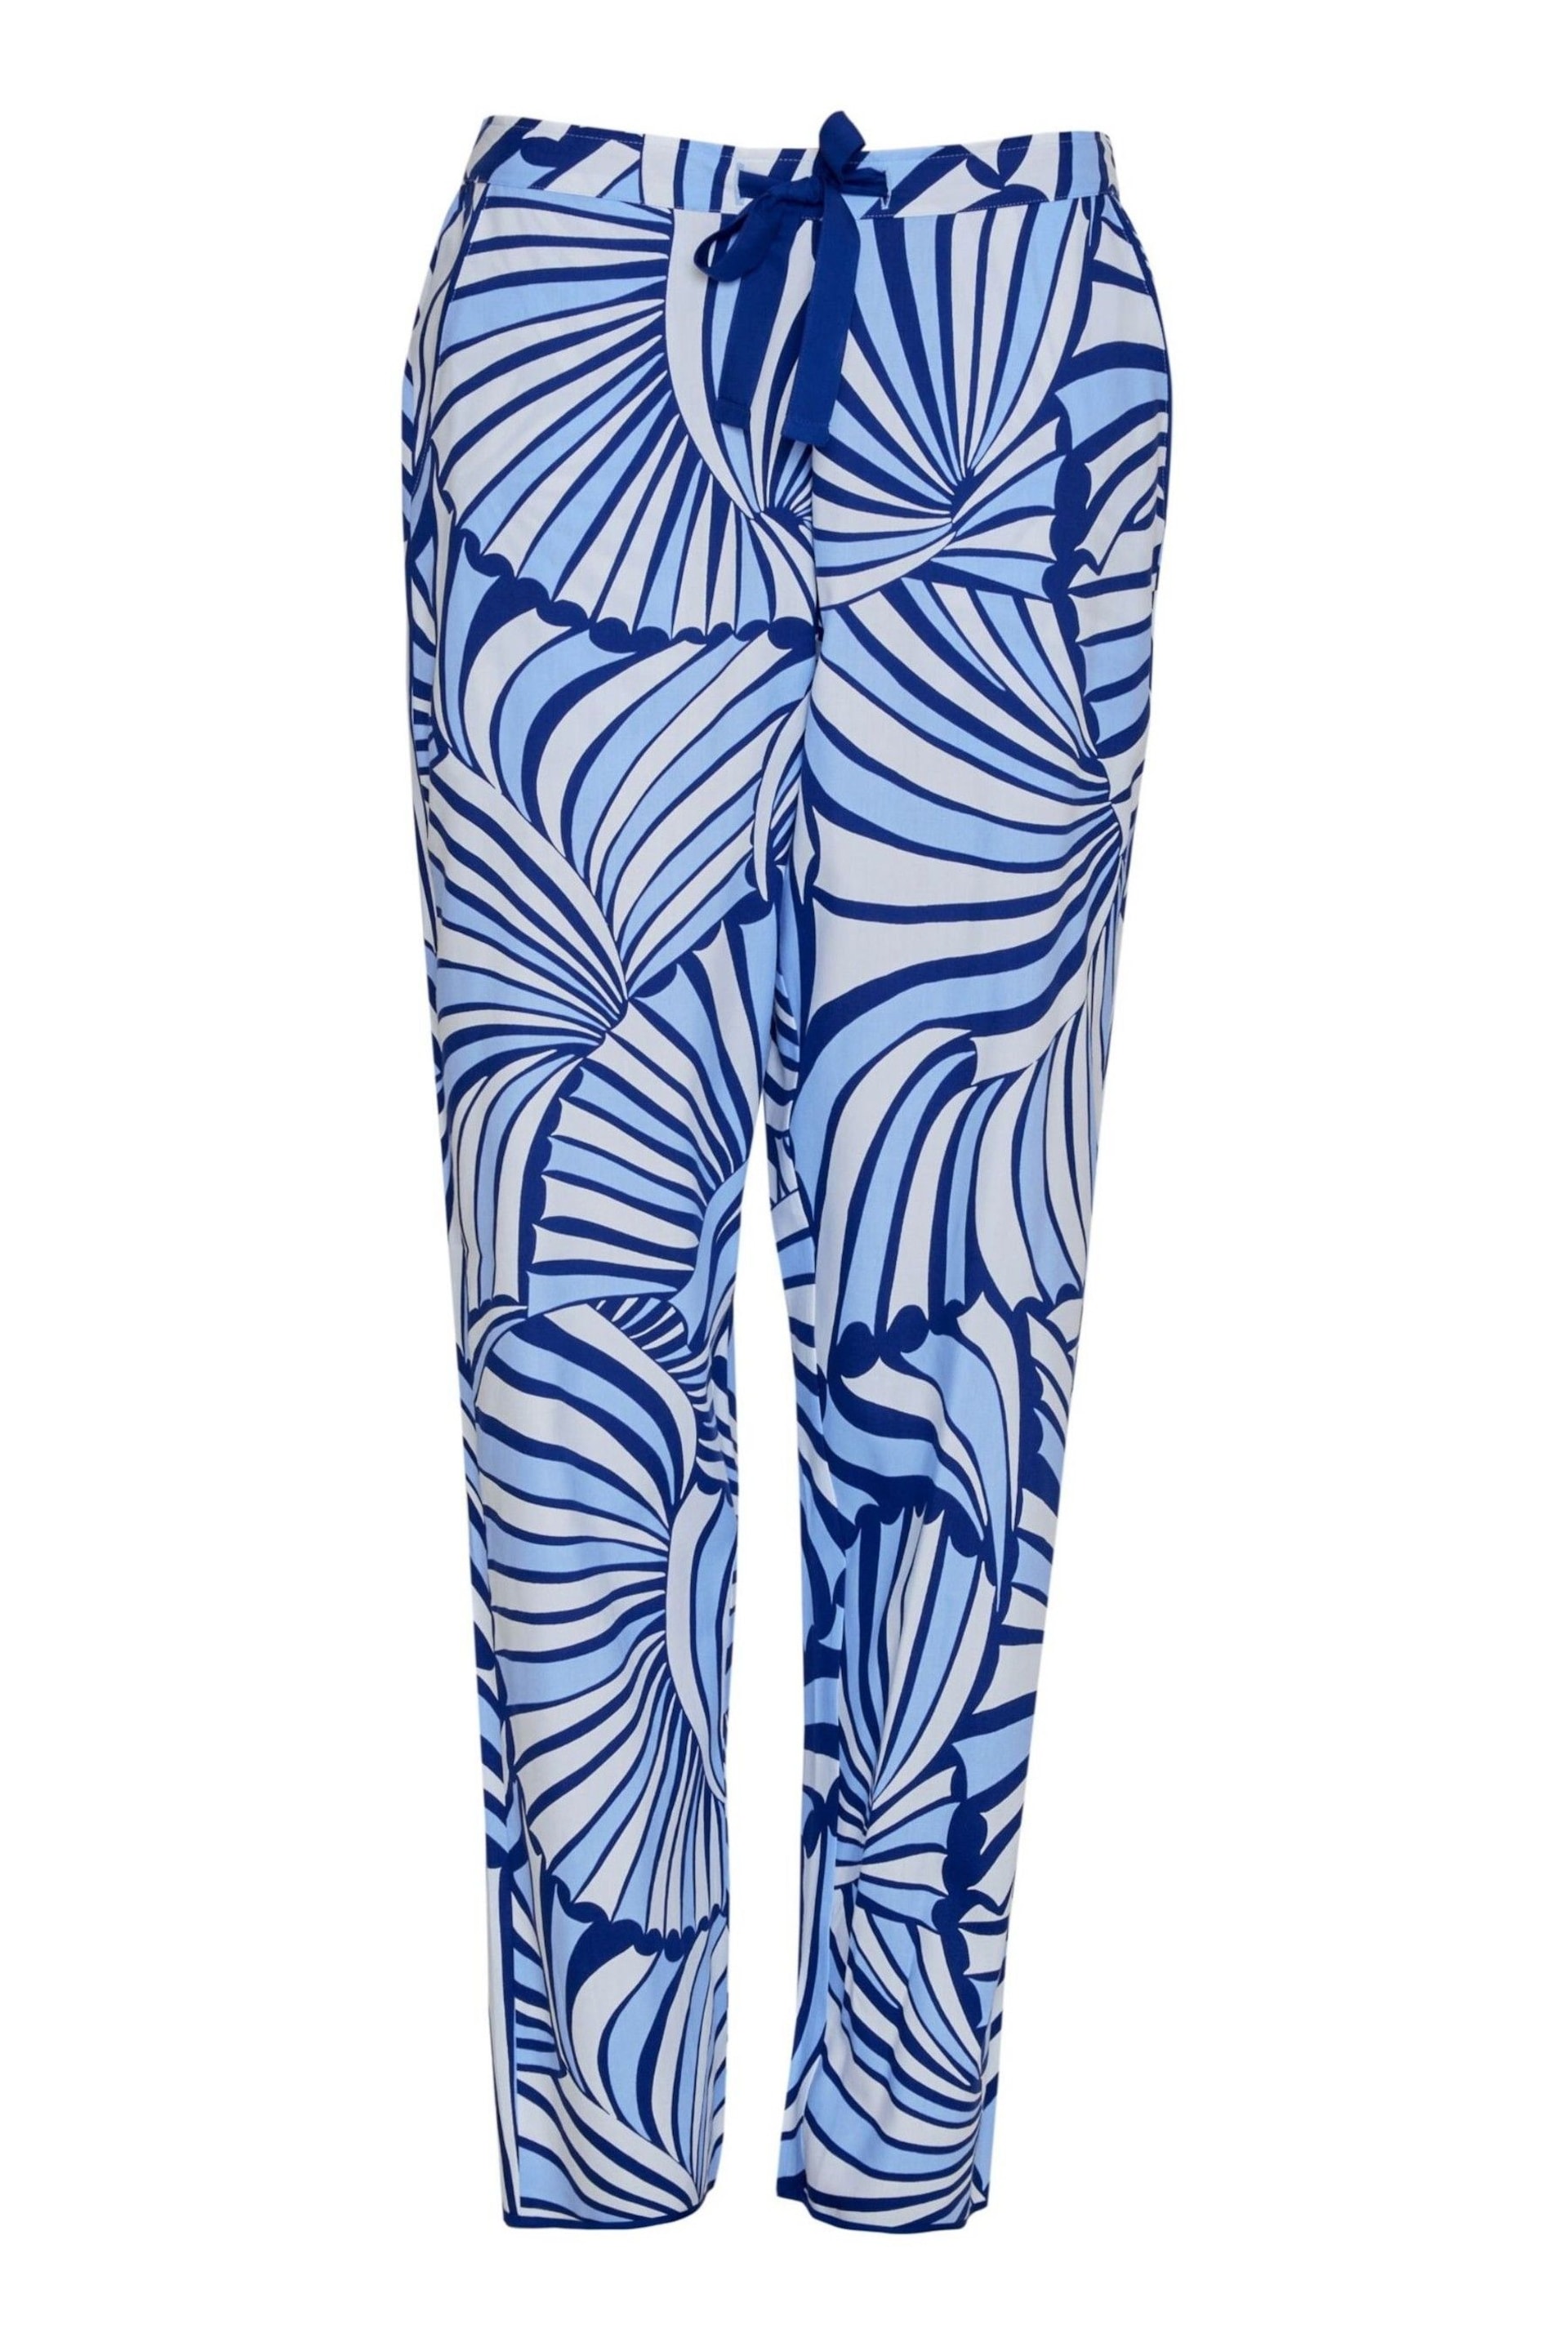 Cyberjammies Blue Printed Pyjama Bottoms - Image 4 of 4